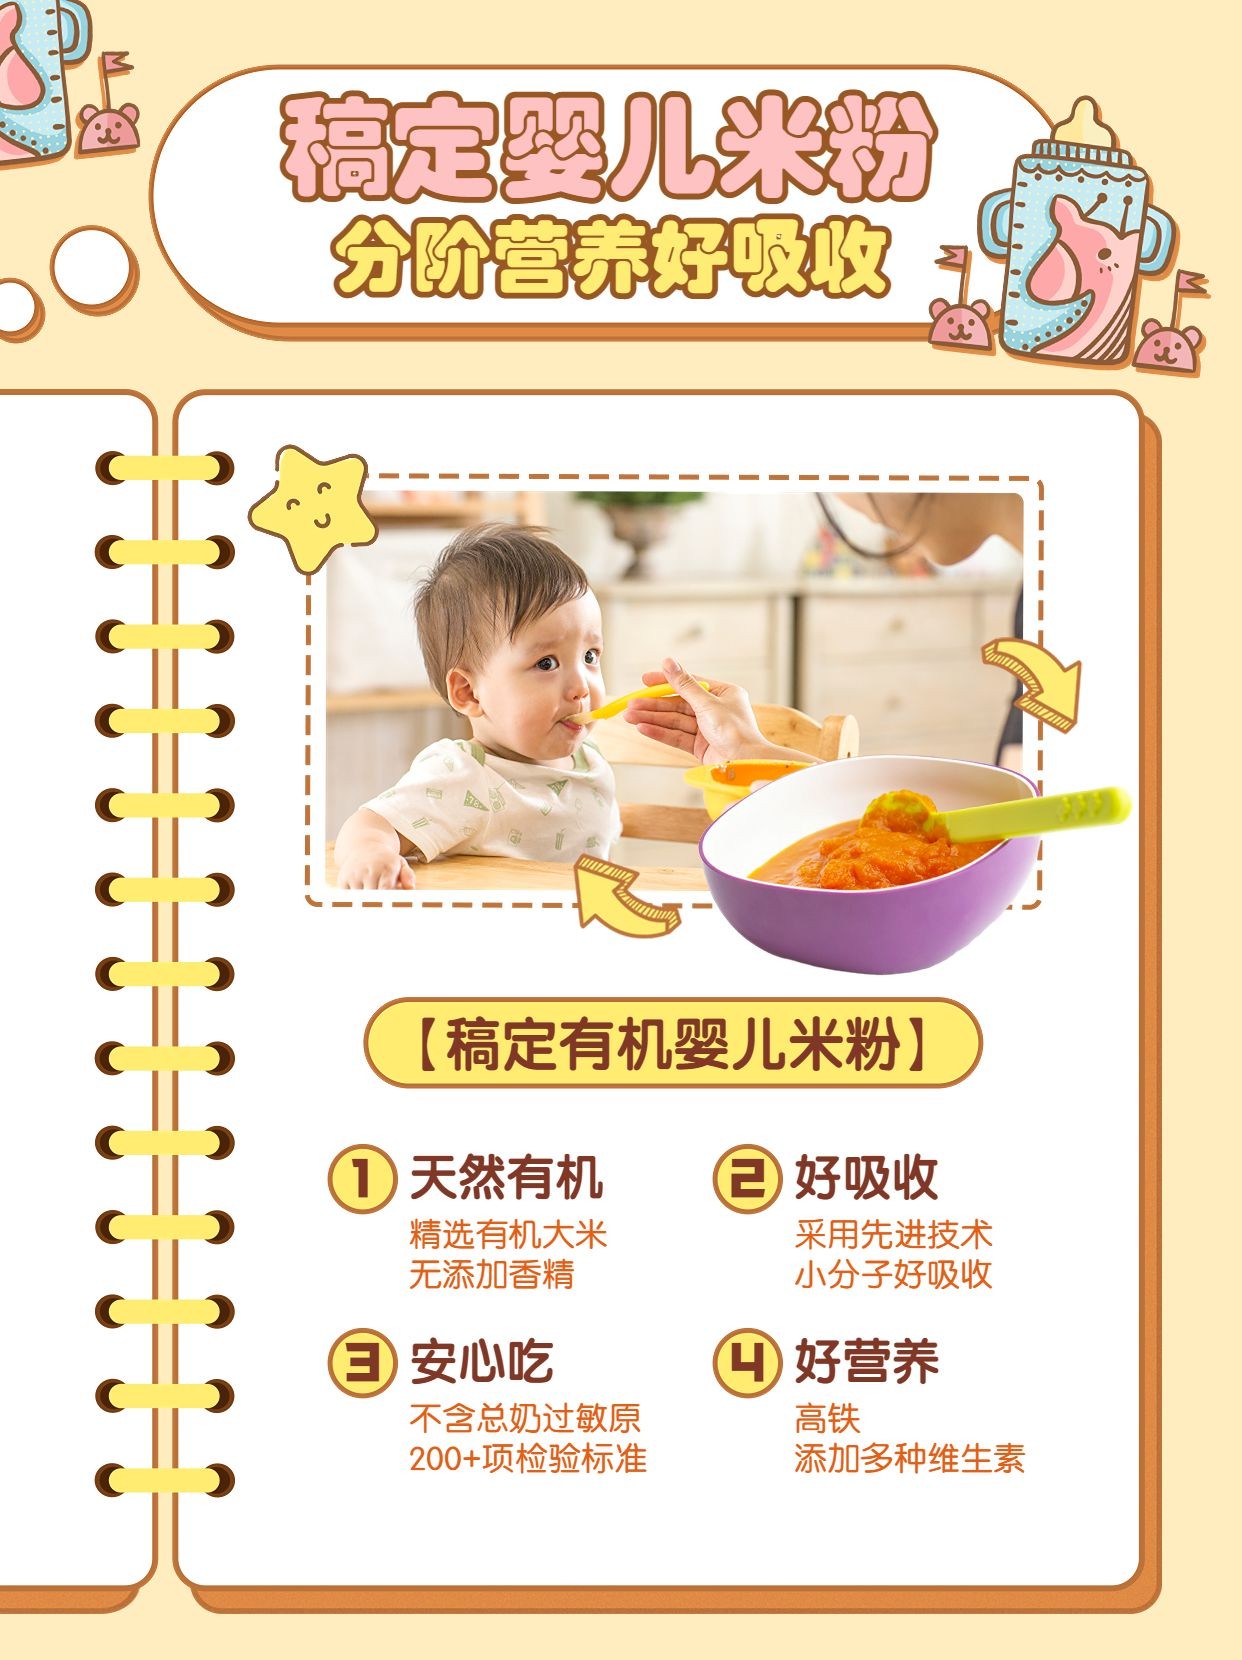 母婴米粉产品展示产品宣传小红书配图预览效果